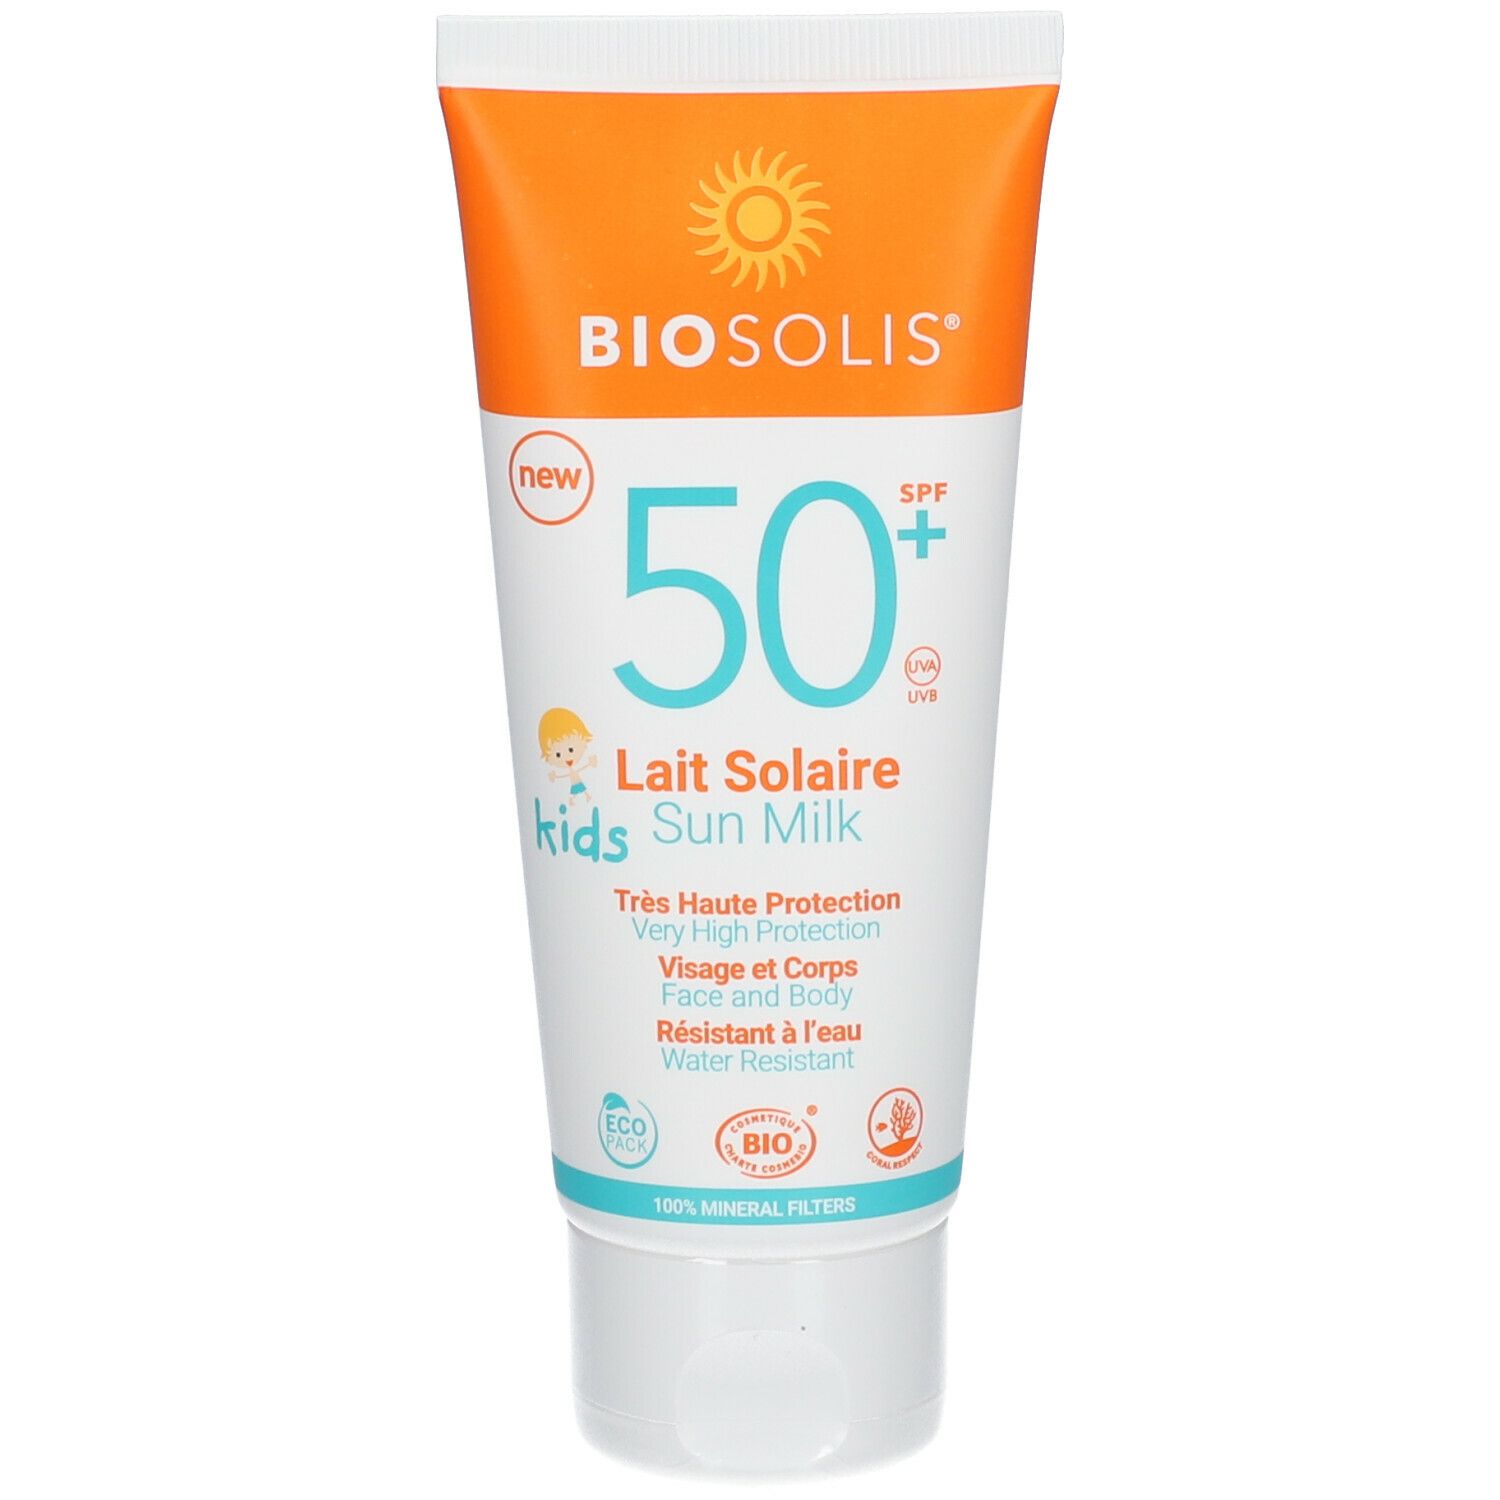 Biosolis® Lait solaire Kids SPF 50+